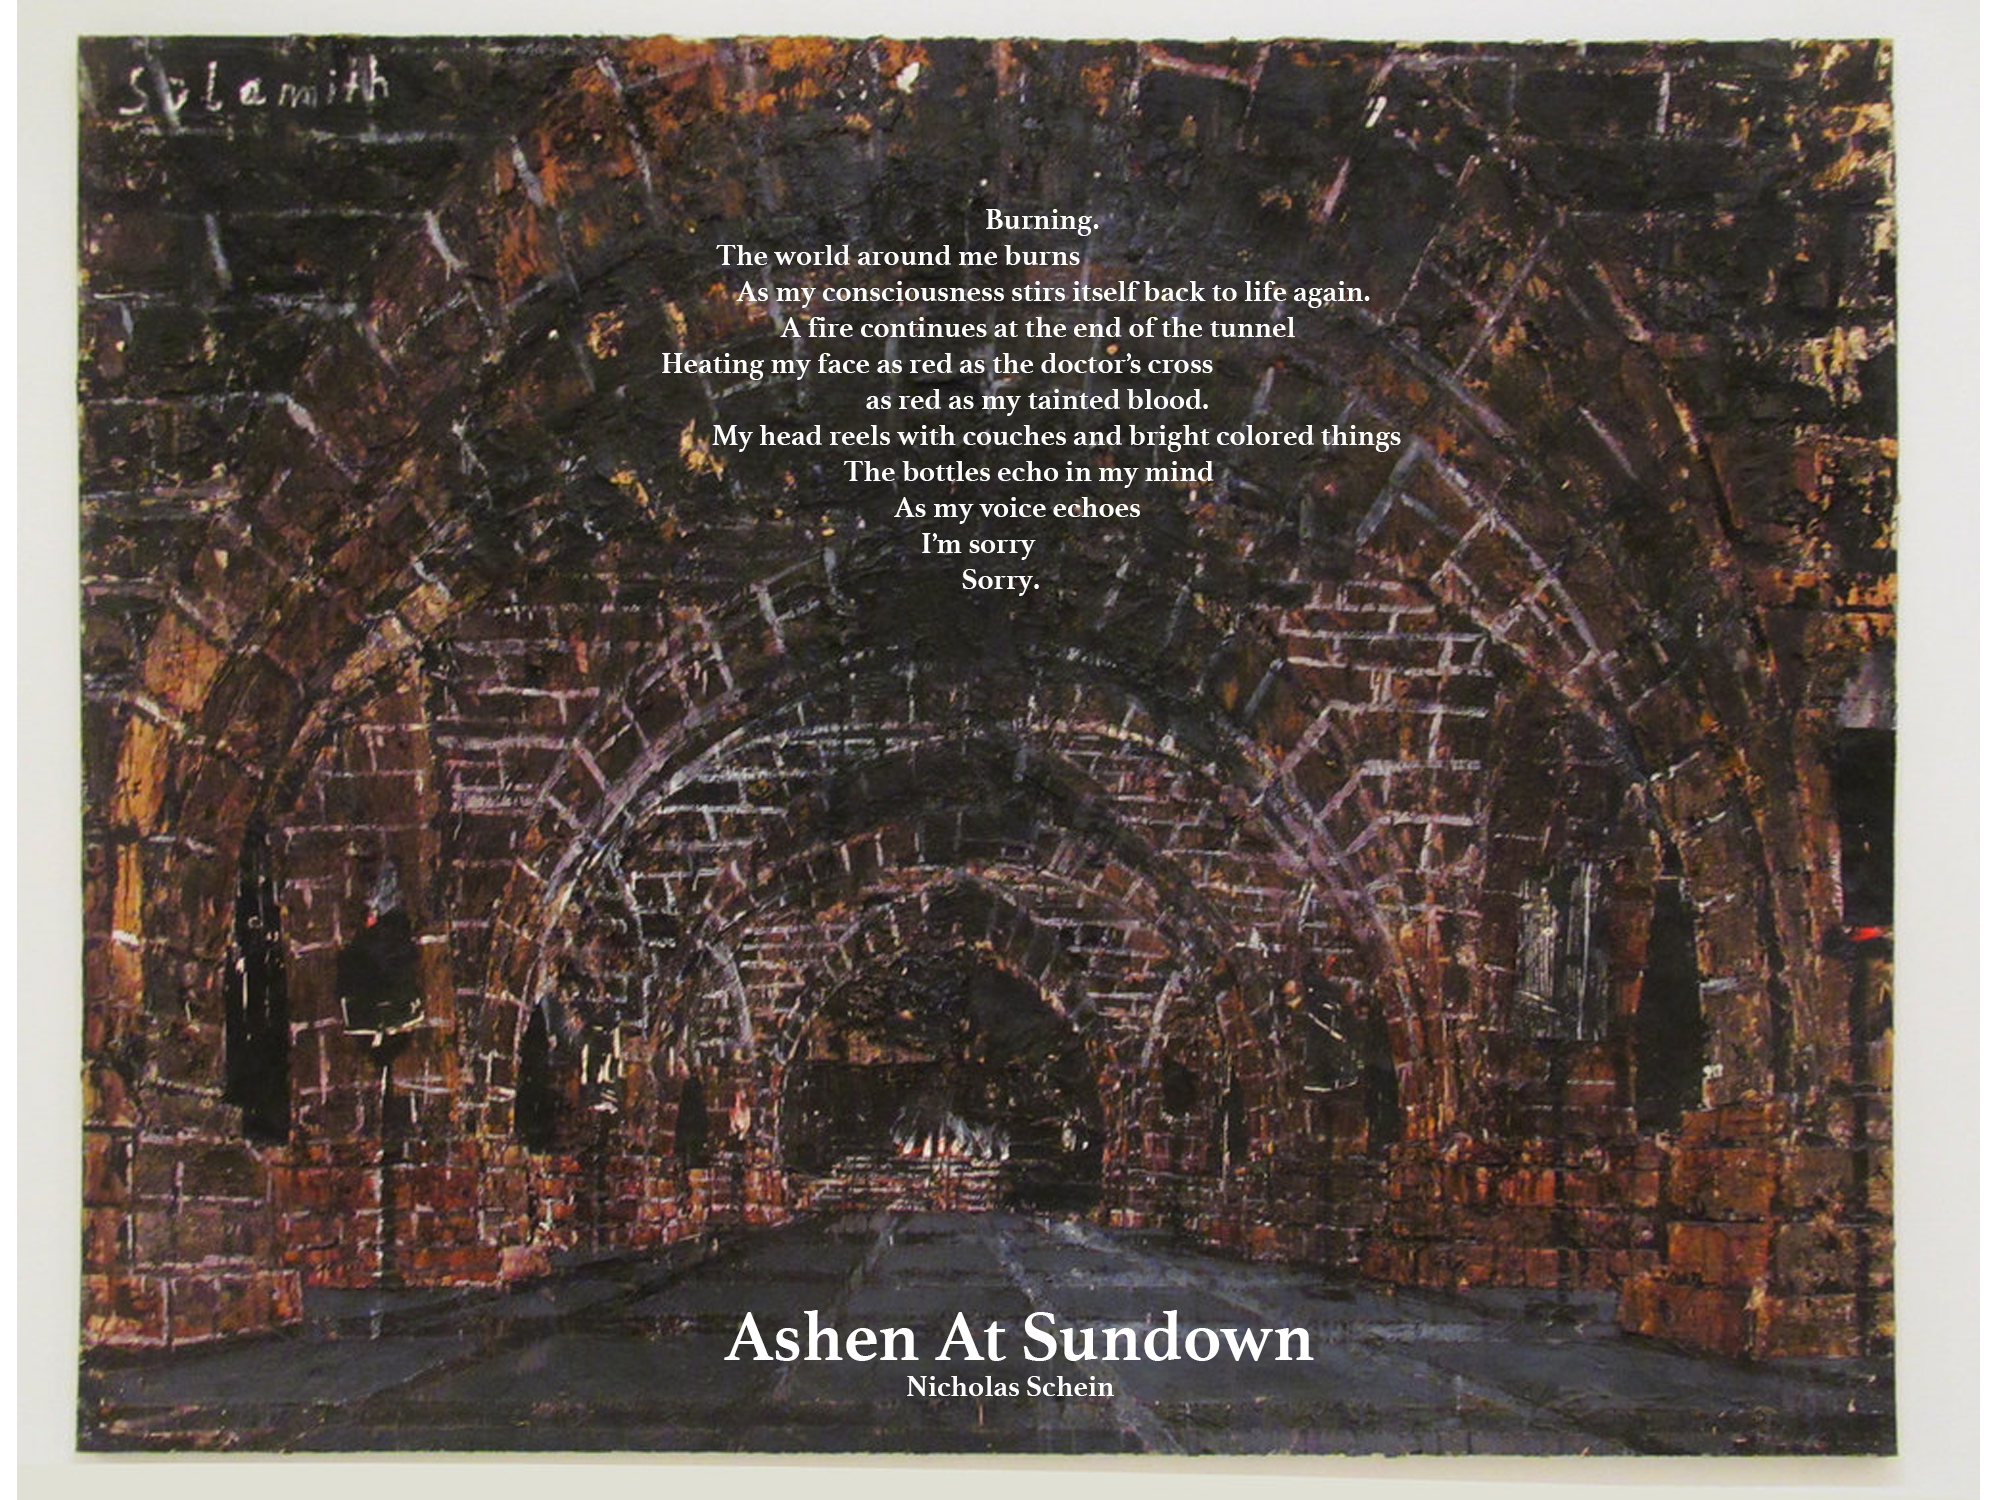 Poem by Nicholas Schein Ashen at Sundown